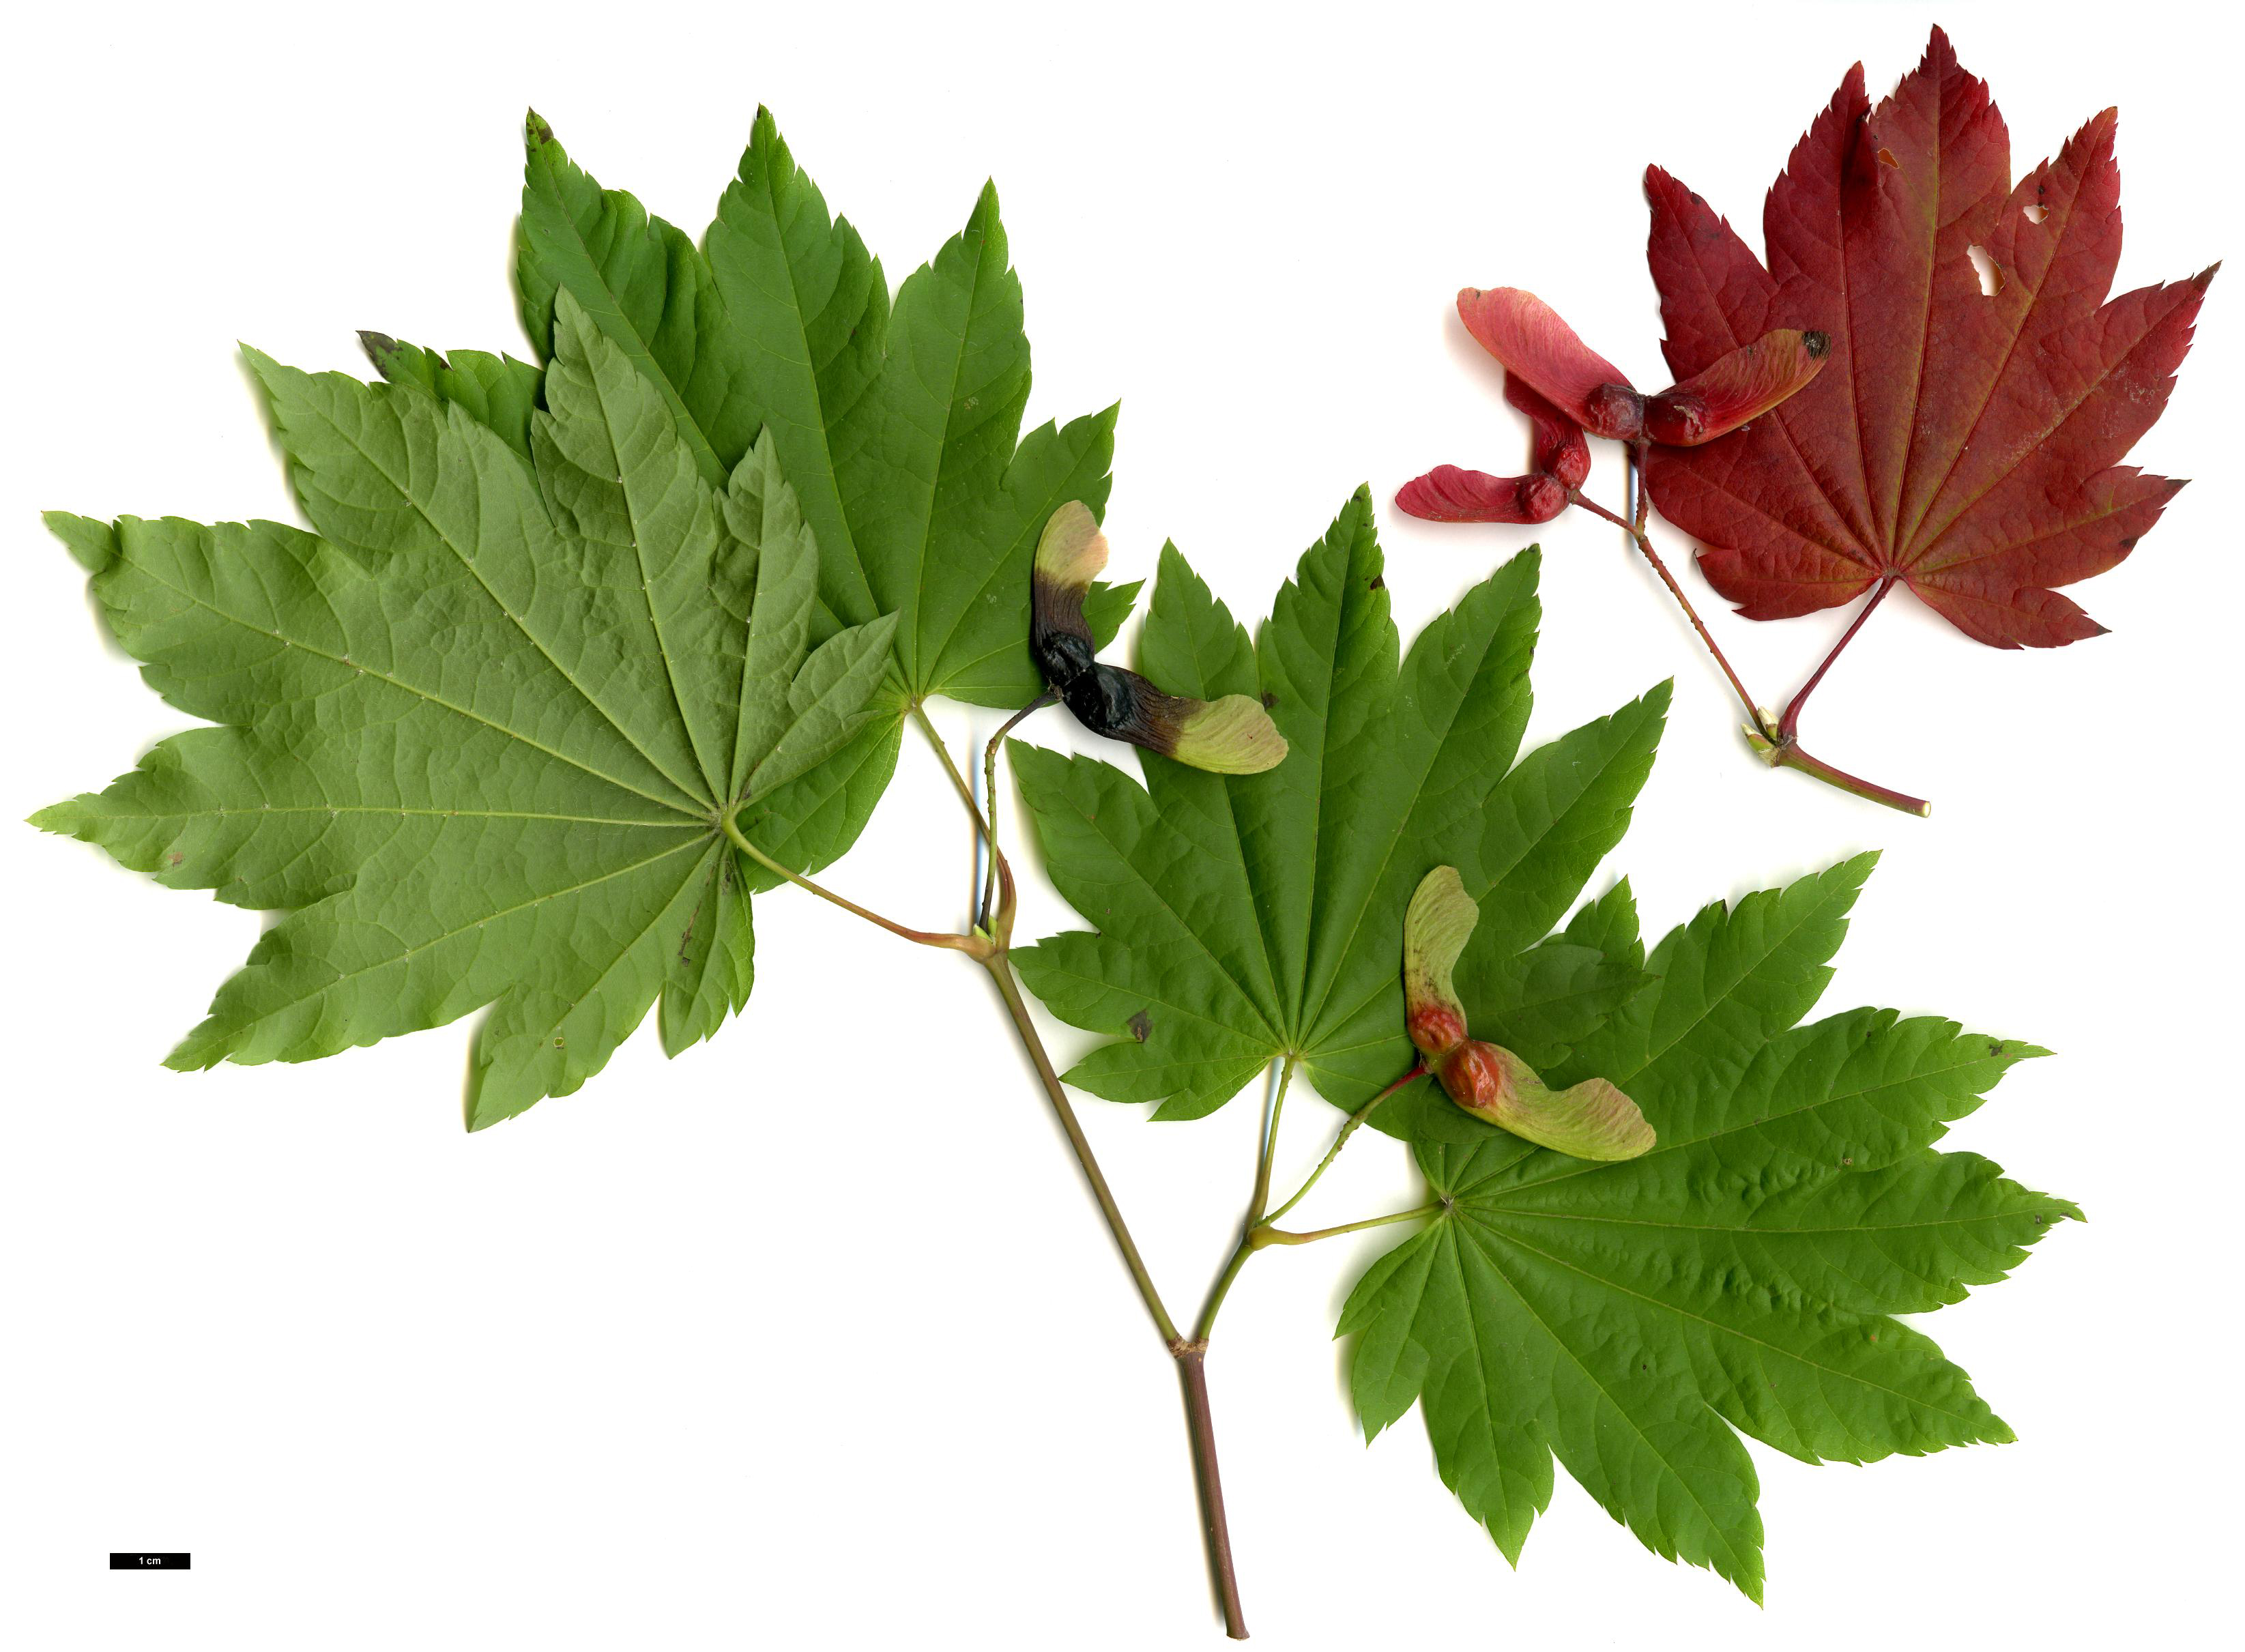 High resolution image: Family: Sapindaceae - Genus: Acer - Taxon: circinatum - SpeciesSub: × A.japonicum 'Vitifolium'